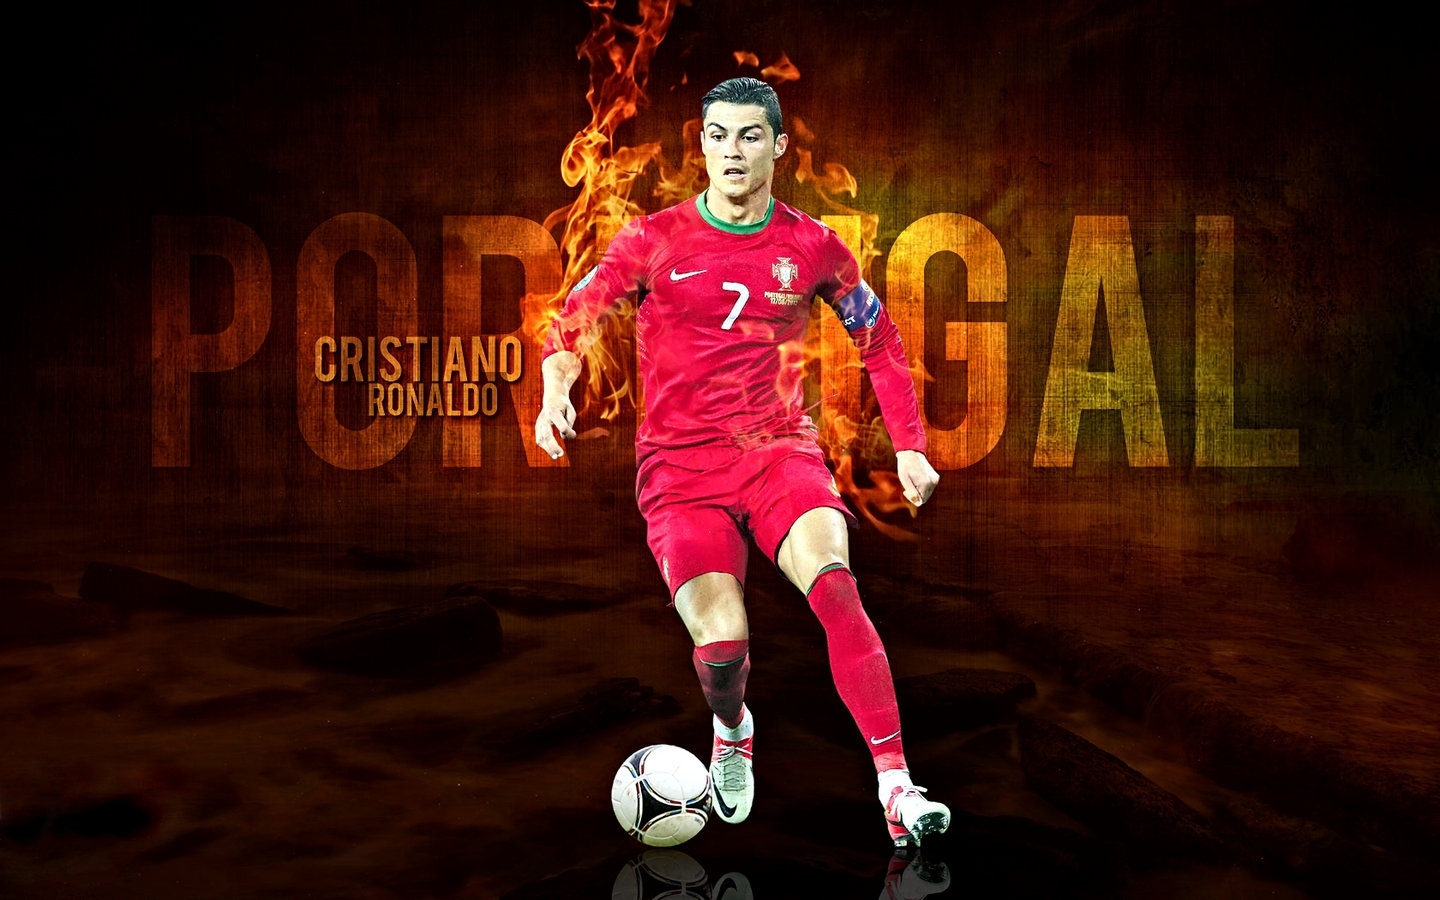 Cristiano Ronaldo - Portugal 2012 - Cristiano Ronaldo Wallpaper ...